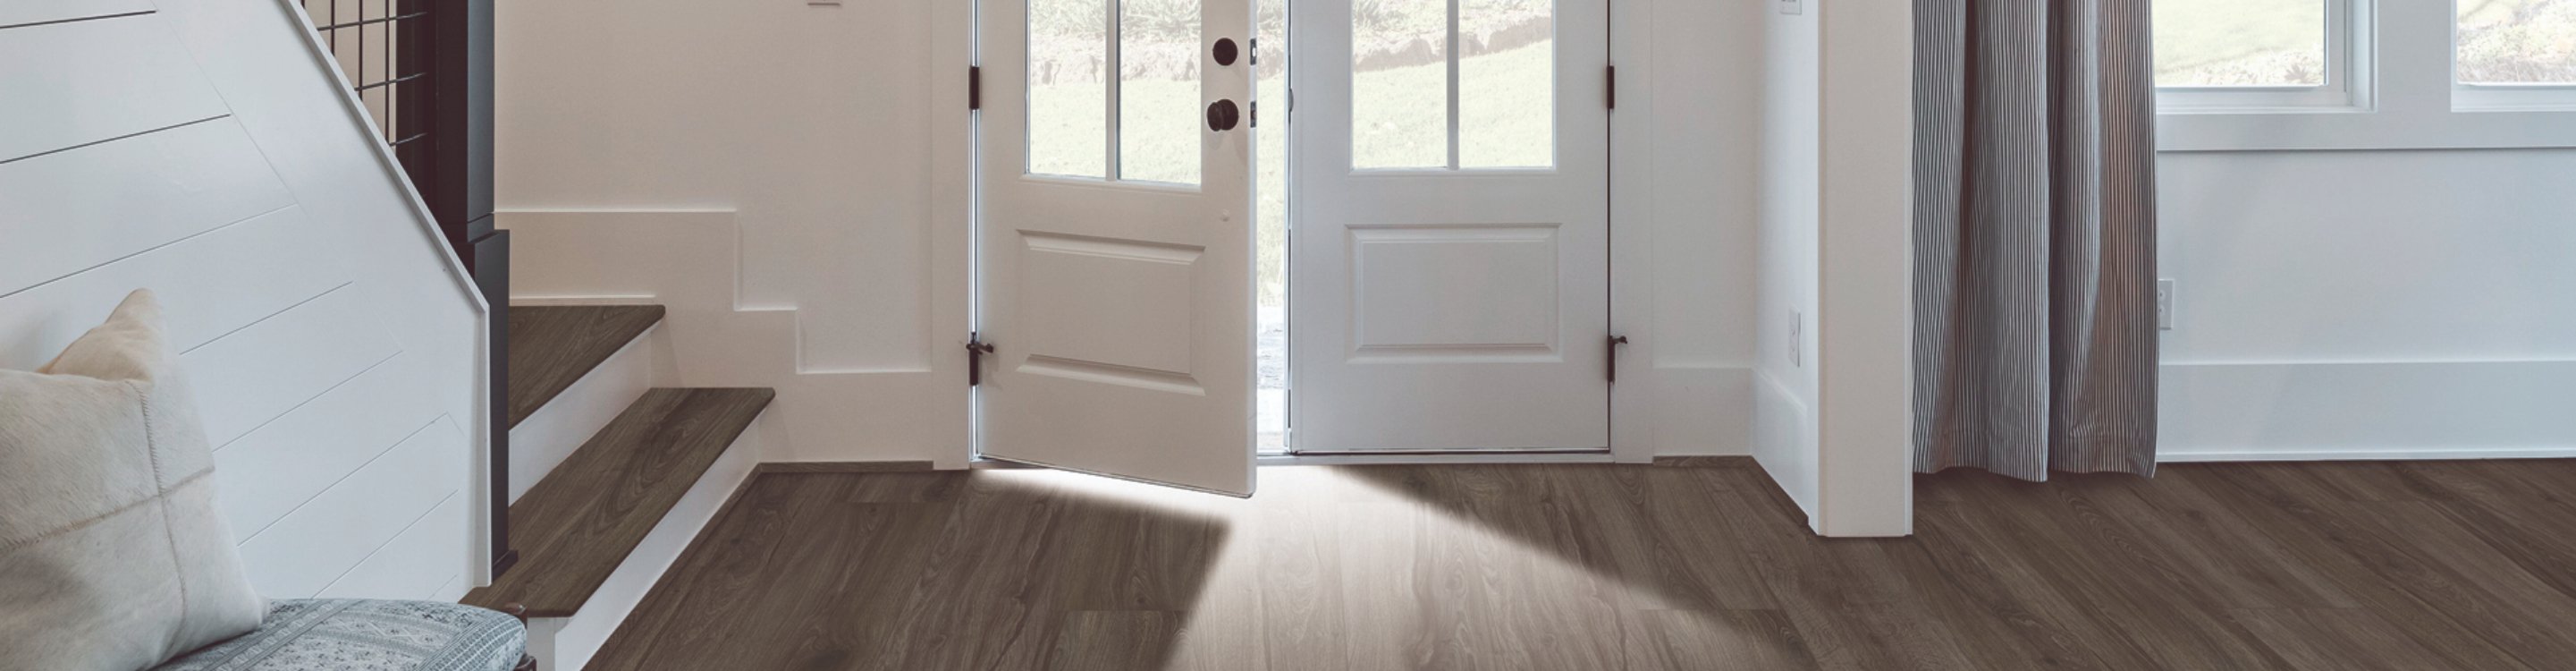 wood look luxury vinyl floors in an entryway